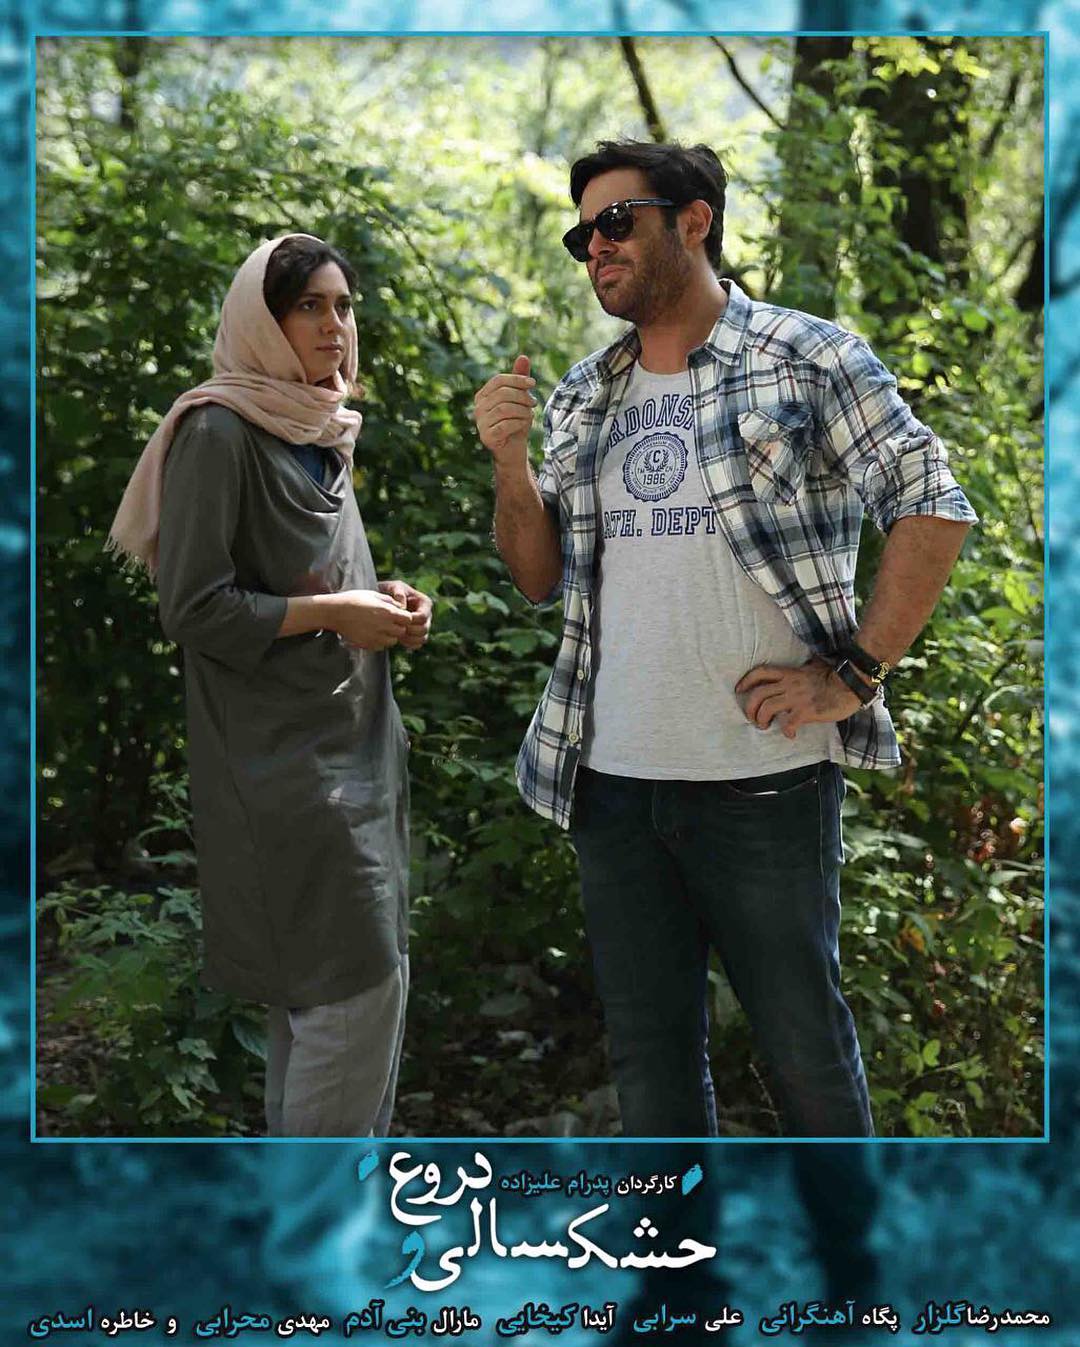 محمدرضا گلزار در صحنه فیلم سینمایی خشکسالی و دروغ به همراه پگاه آهنگرانی